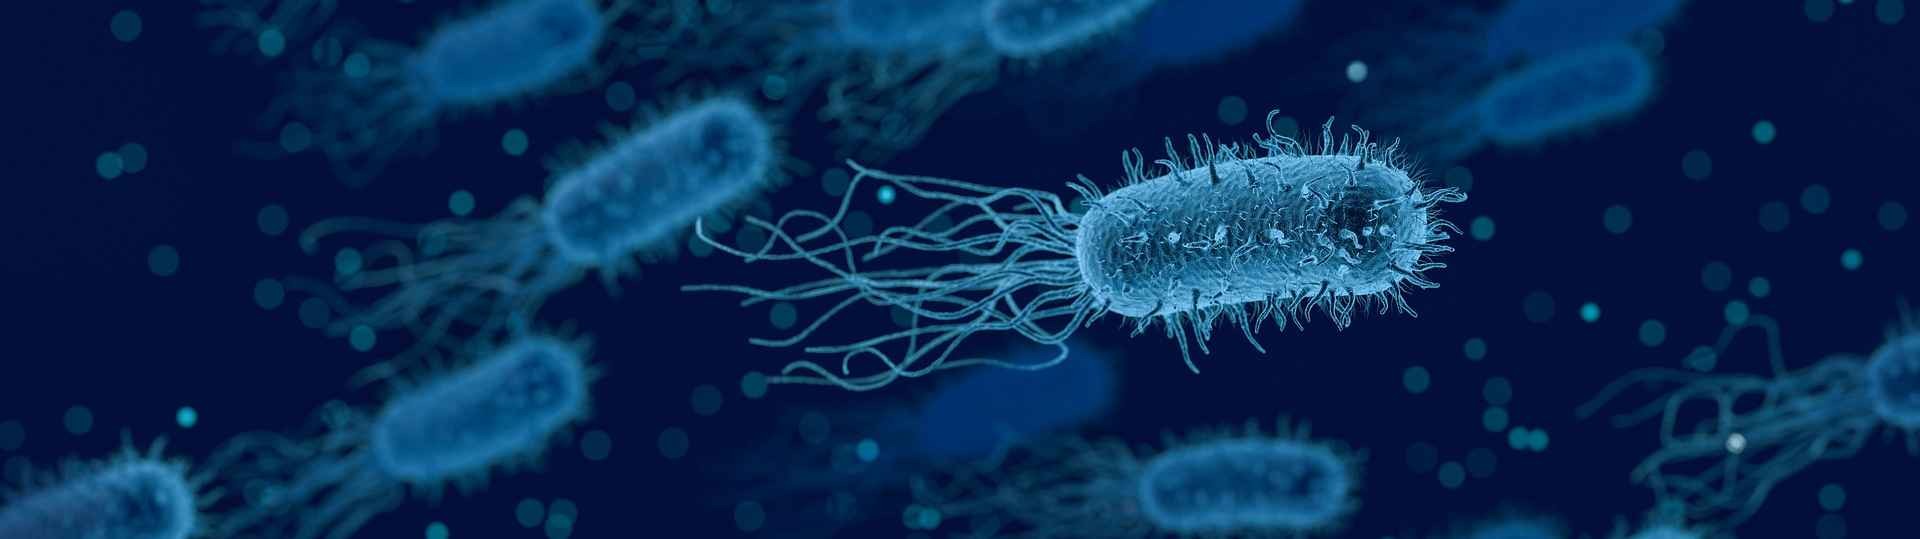 Virus contra bacterias, la fagoterapia como alternativa a los antibióticos